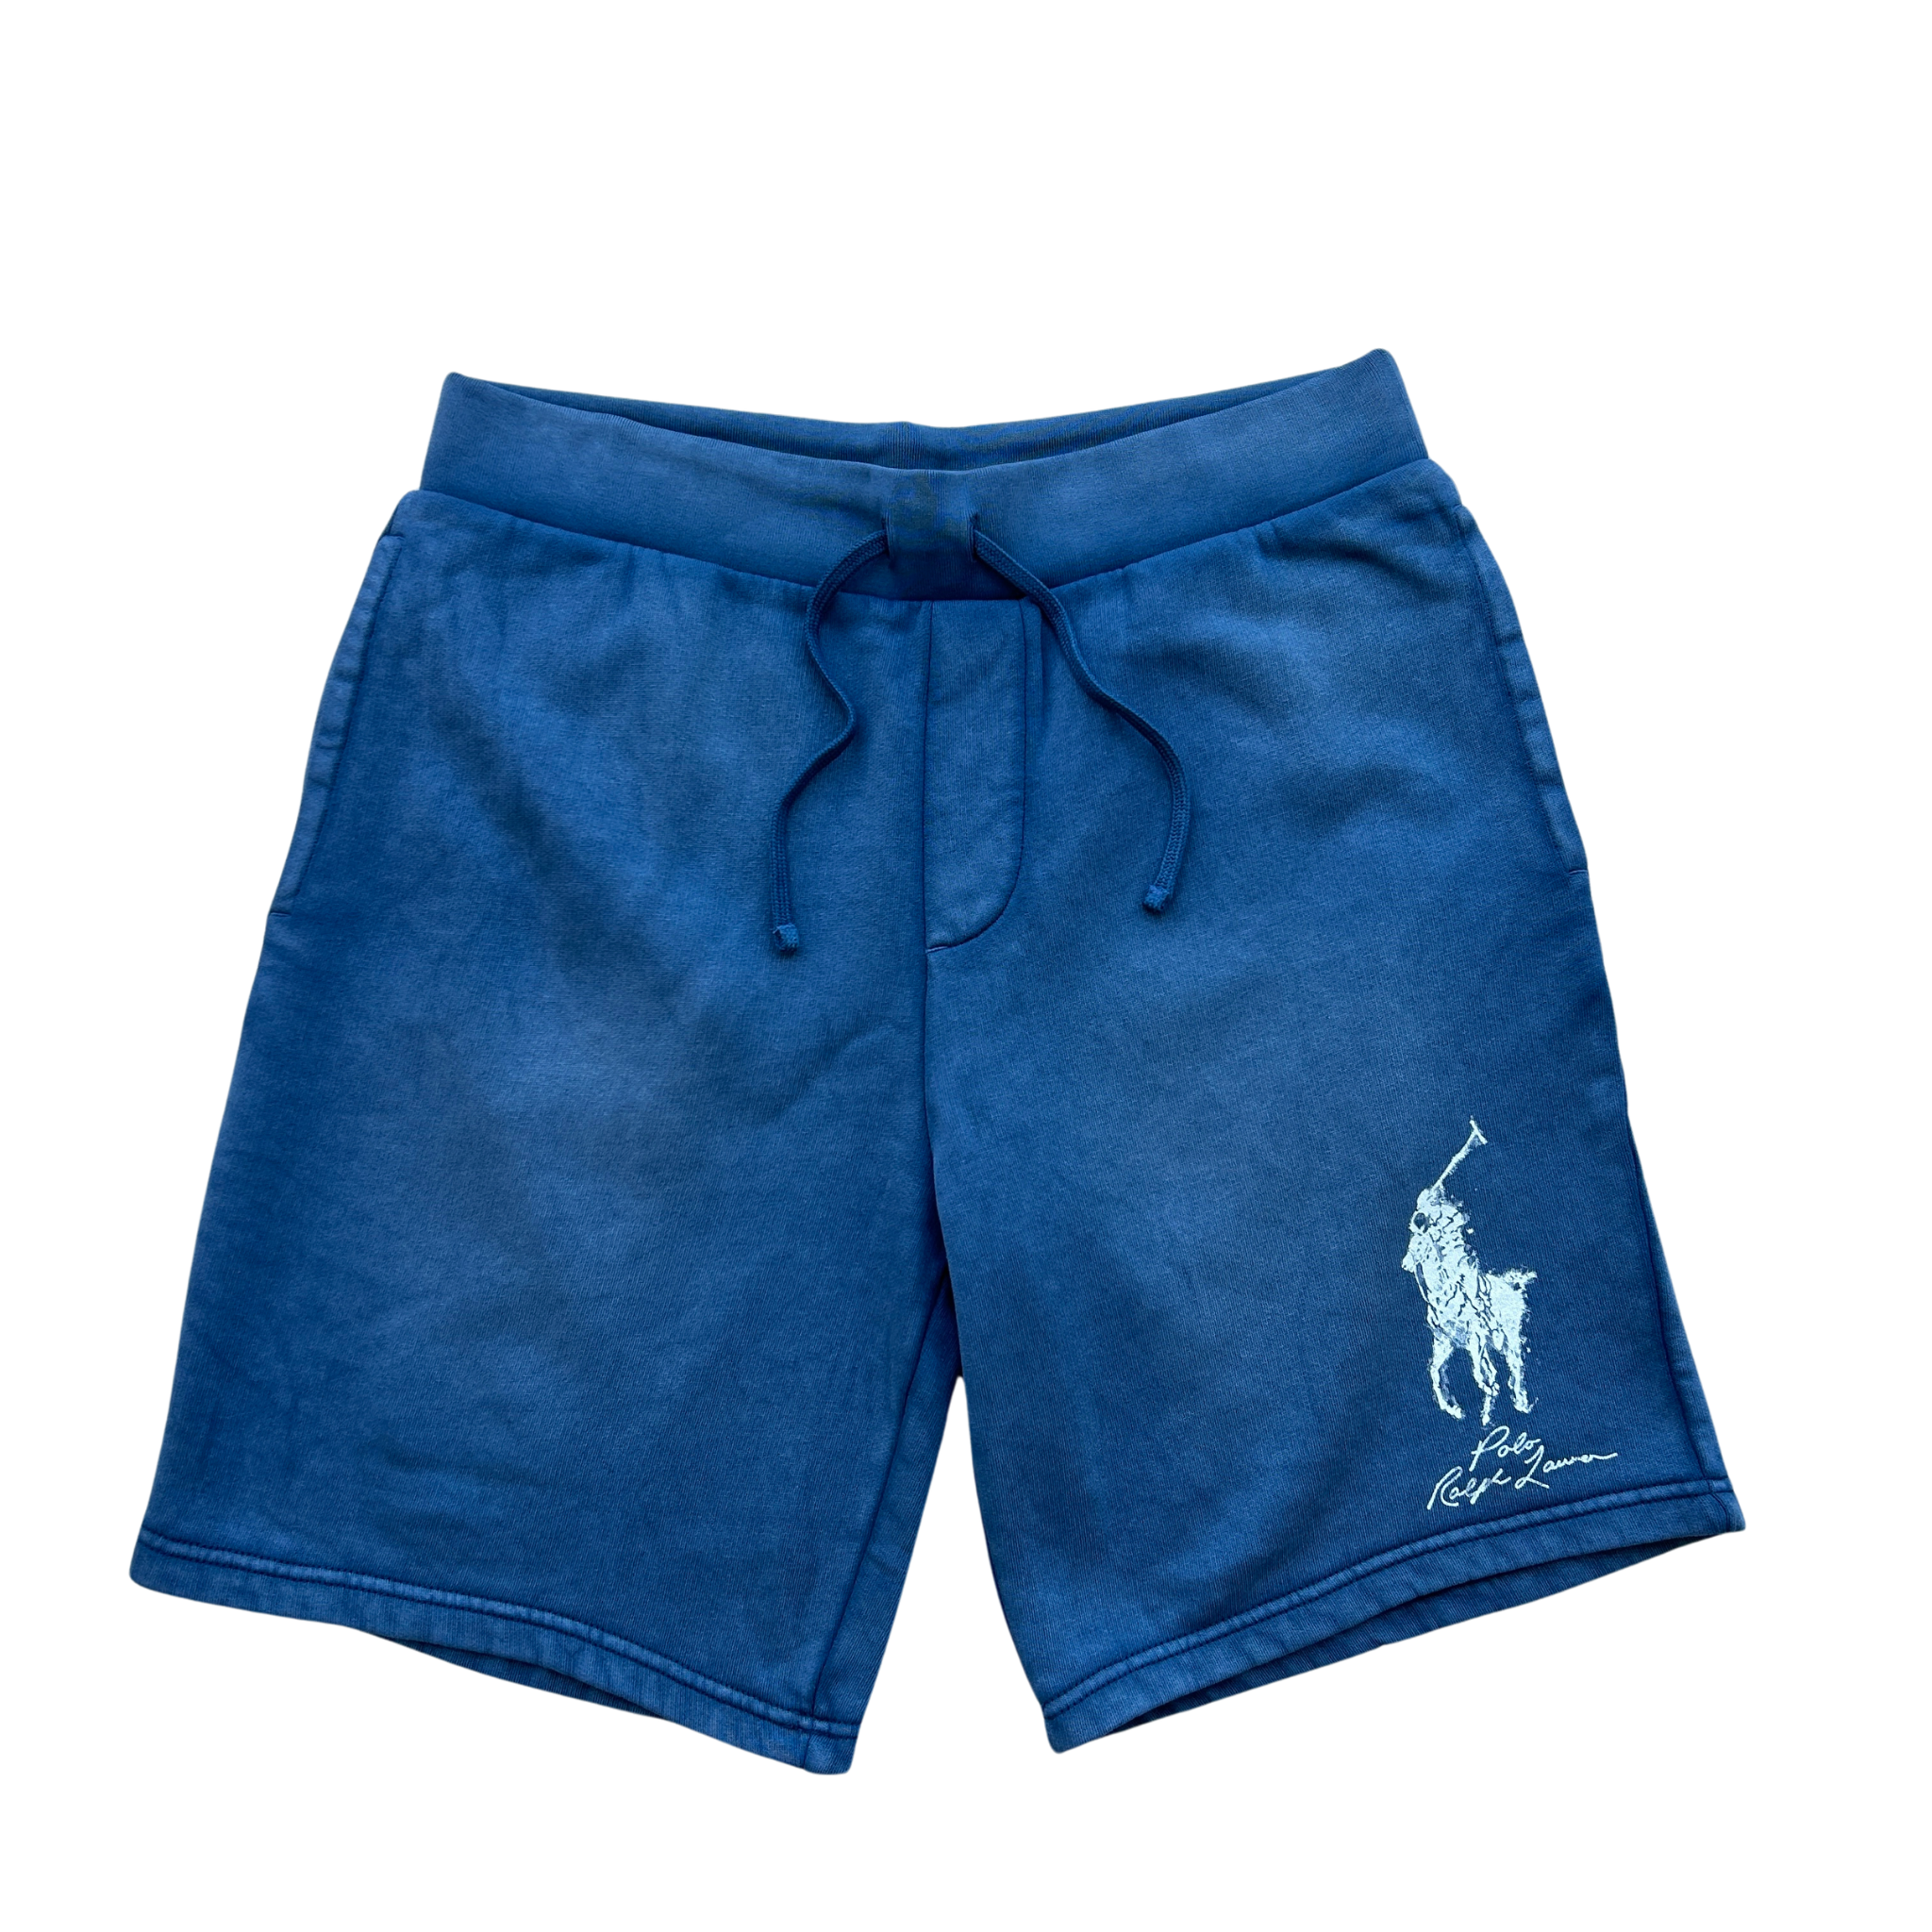 Polo Ralph Lauren Polo Shorts (Navy) - Polo Ralph Lauren